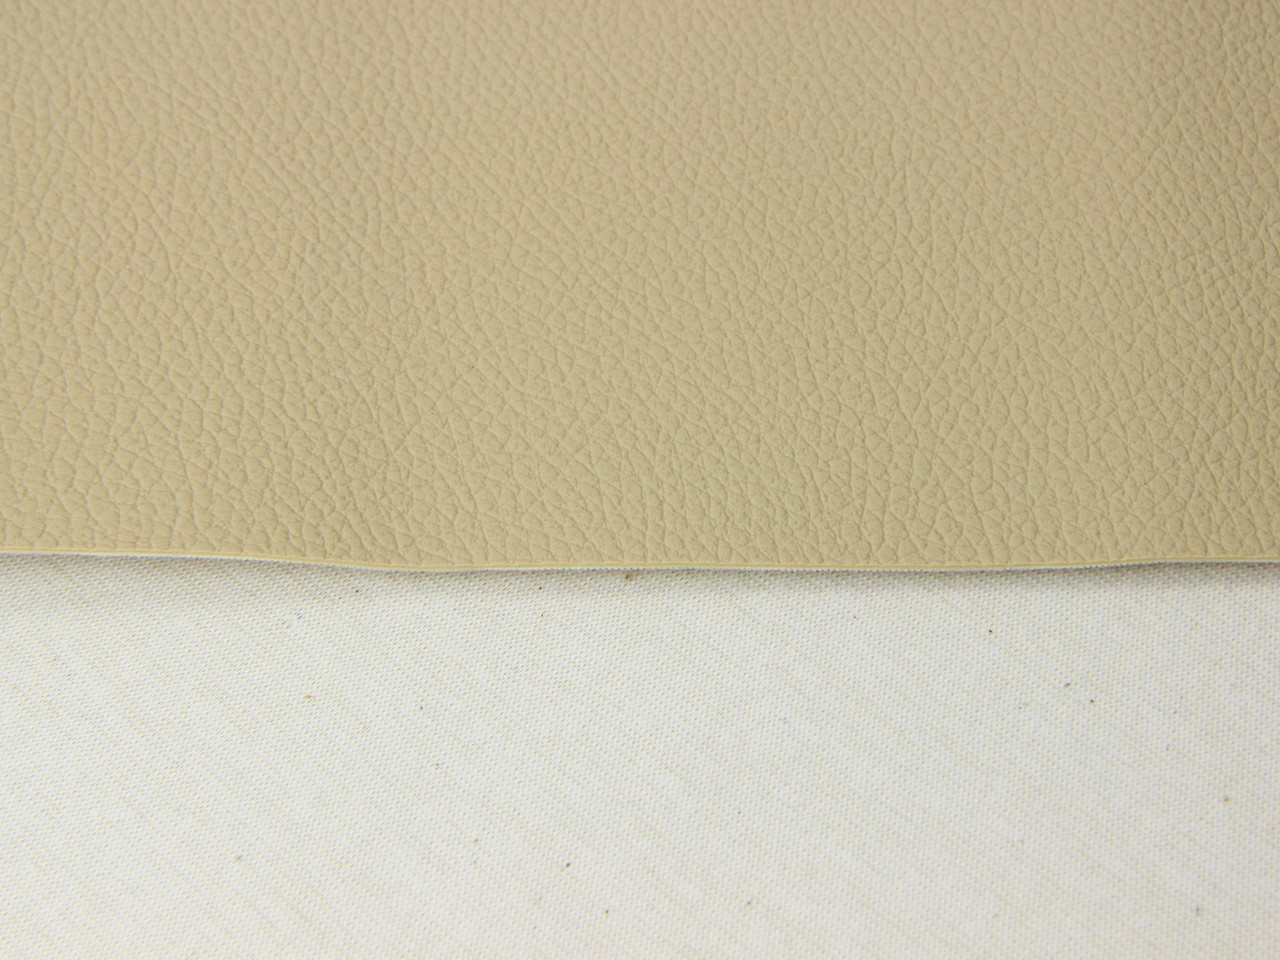 Автомобильный кожзам перфорированный DAKOTA B192п бежевая, на тканевой основе (ширина 1,40м) Турция детальная фотка